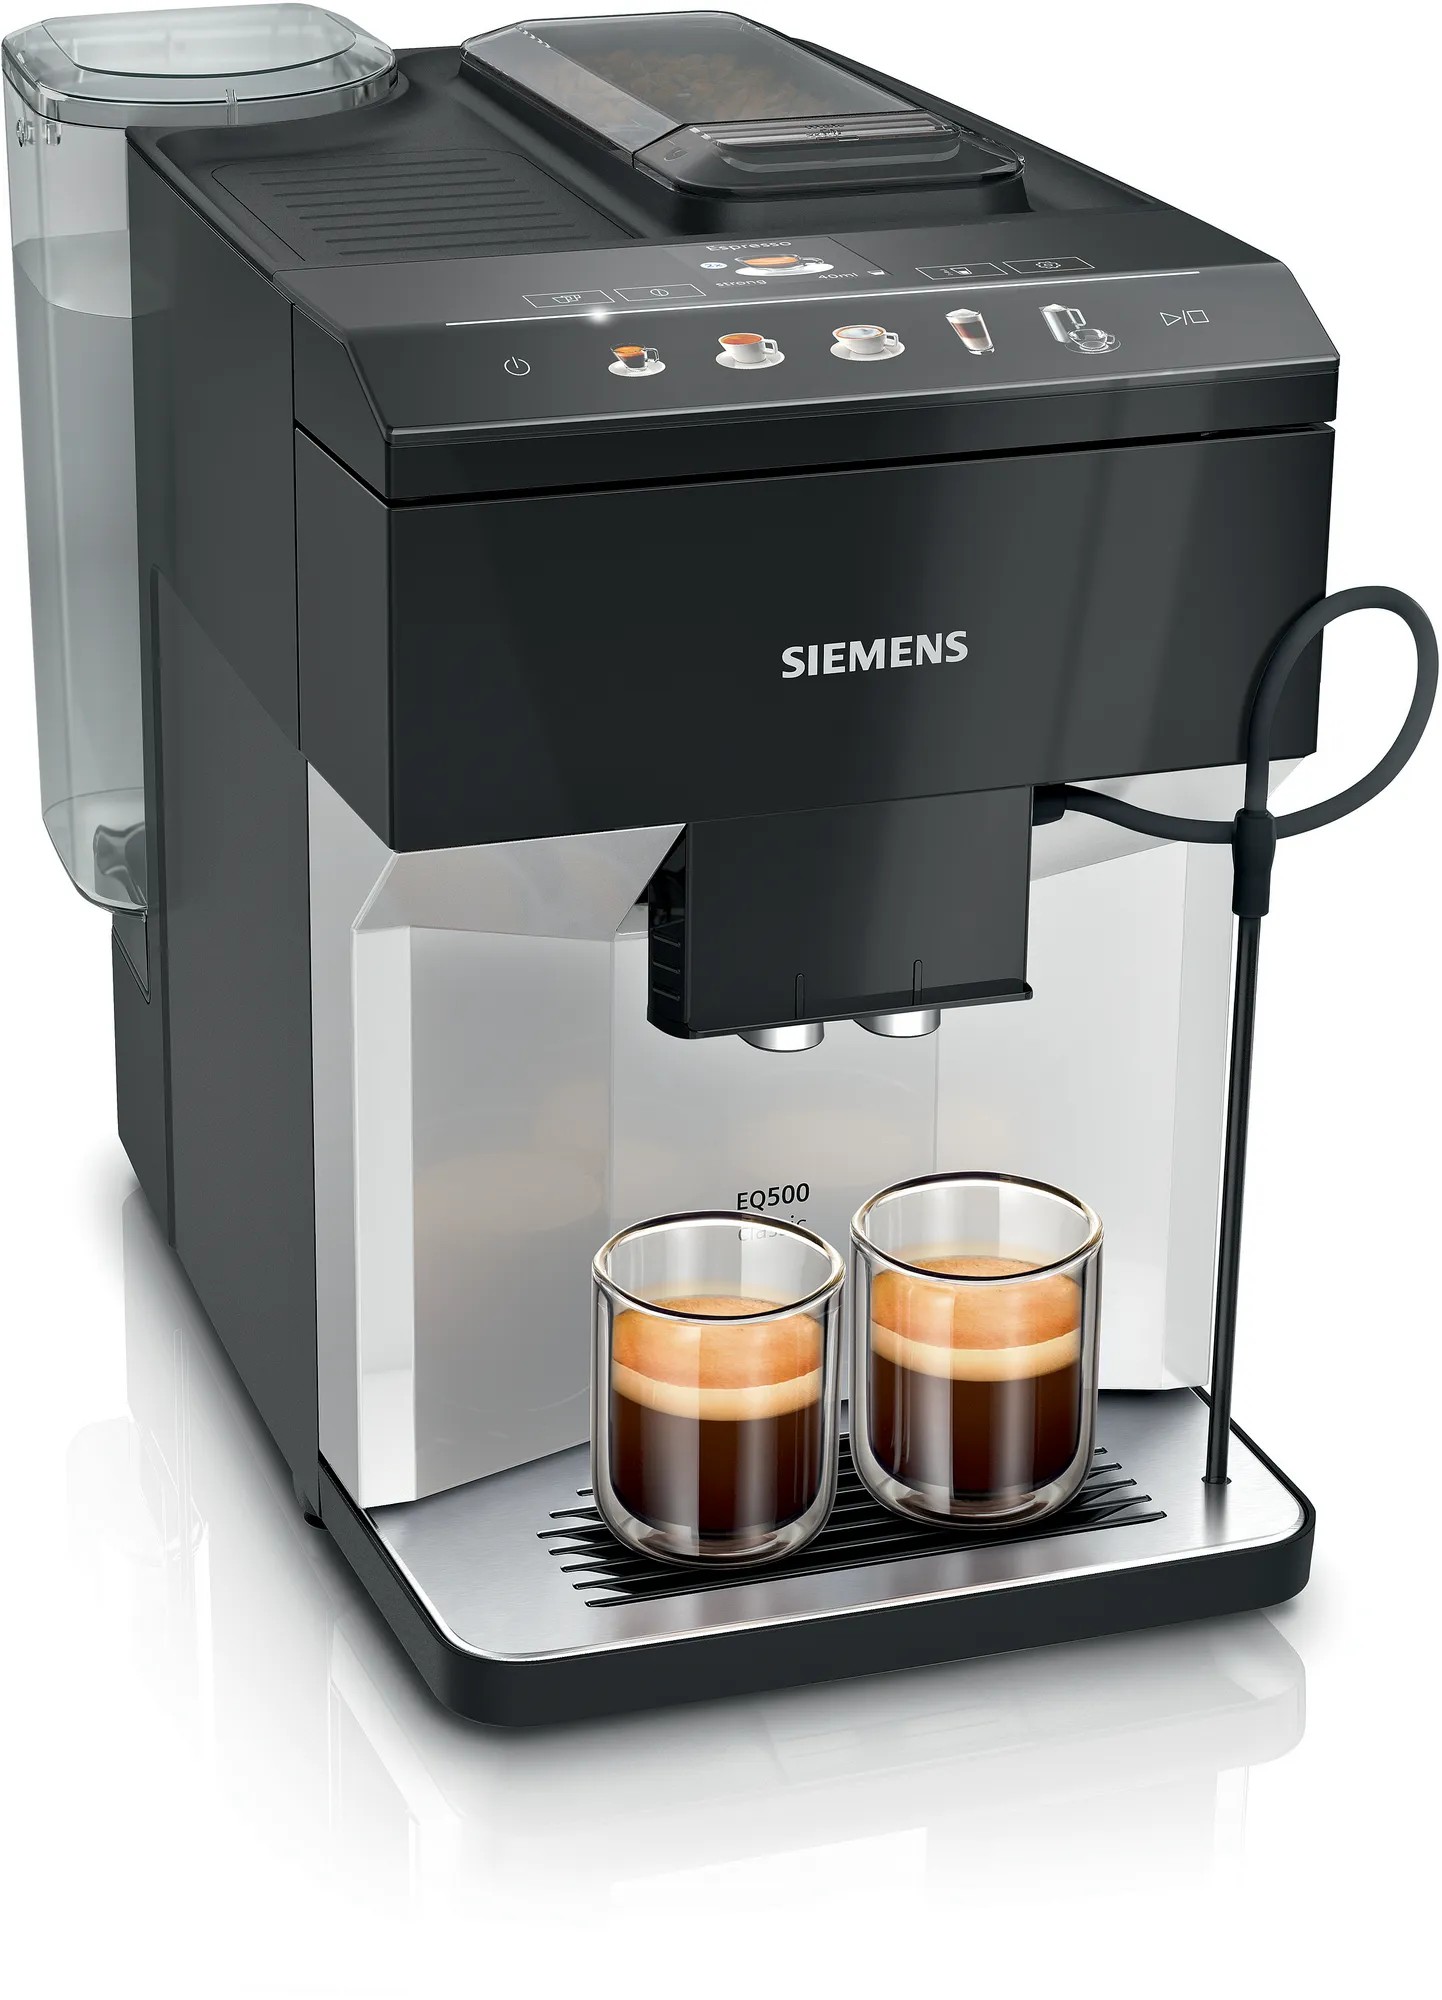 Отзывы кофемашина Siemens TP511R01 в Украине